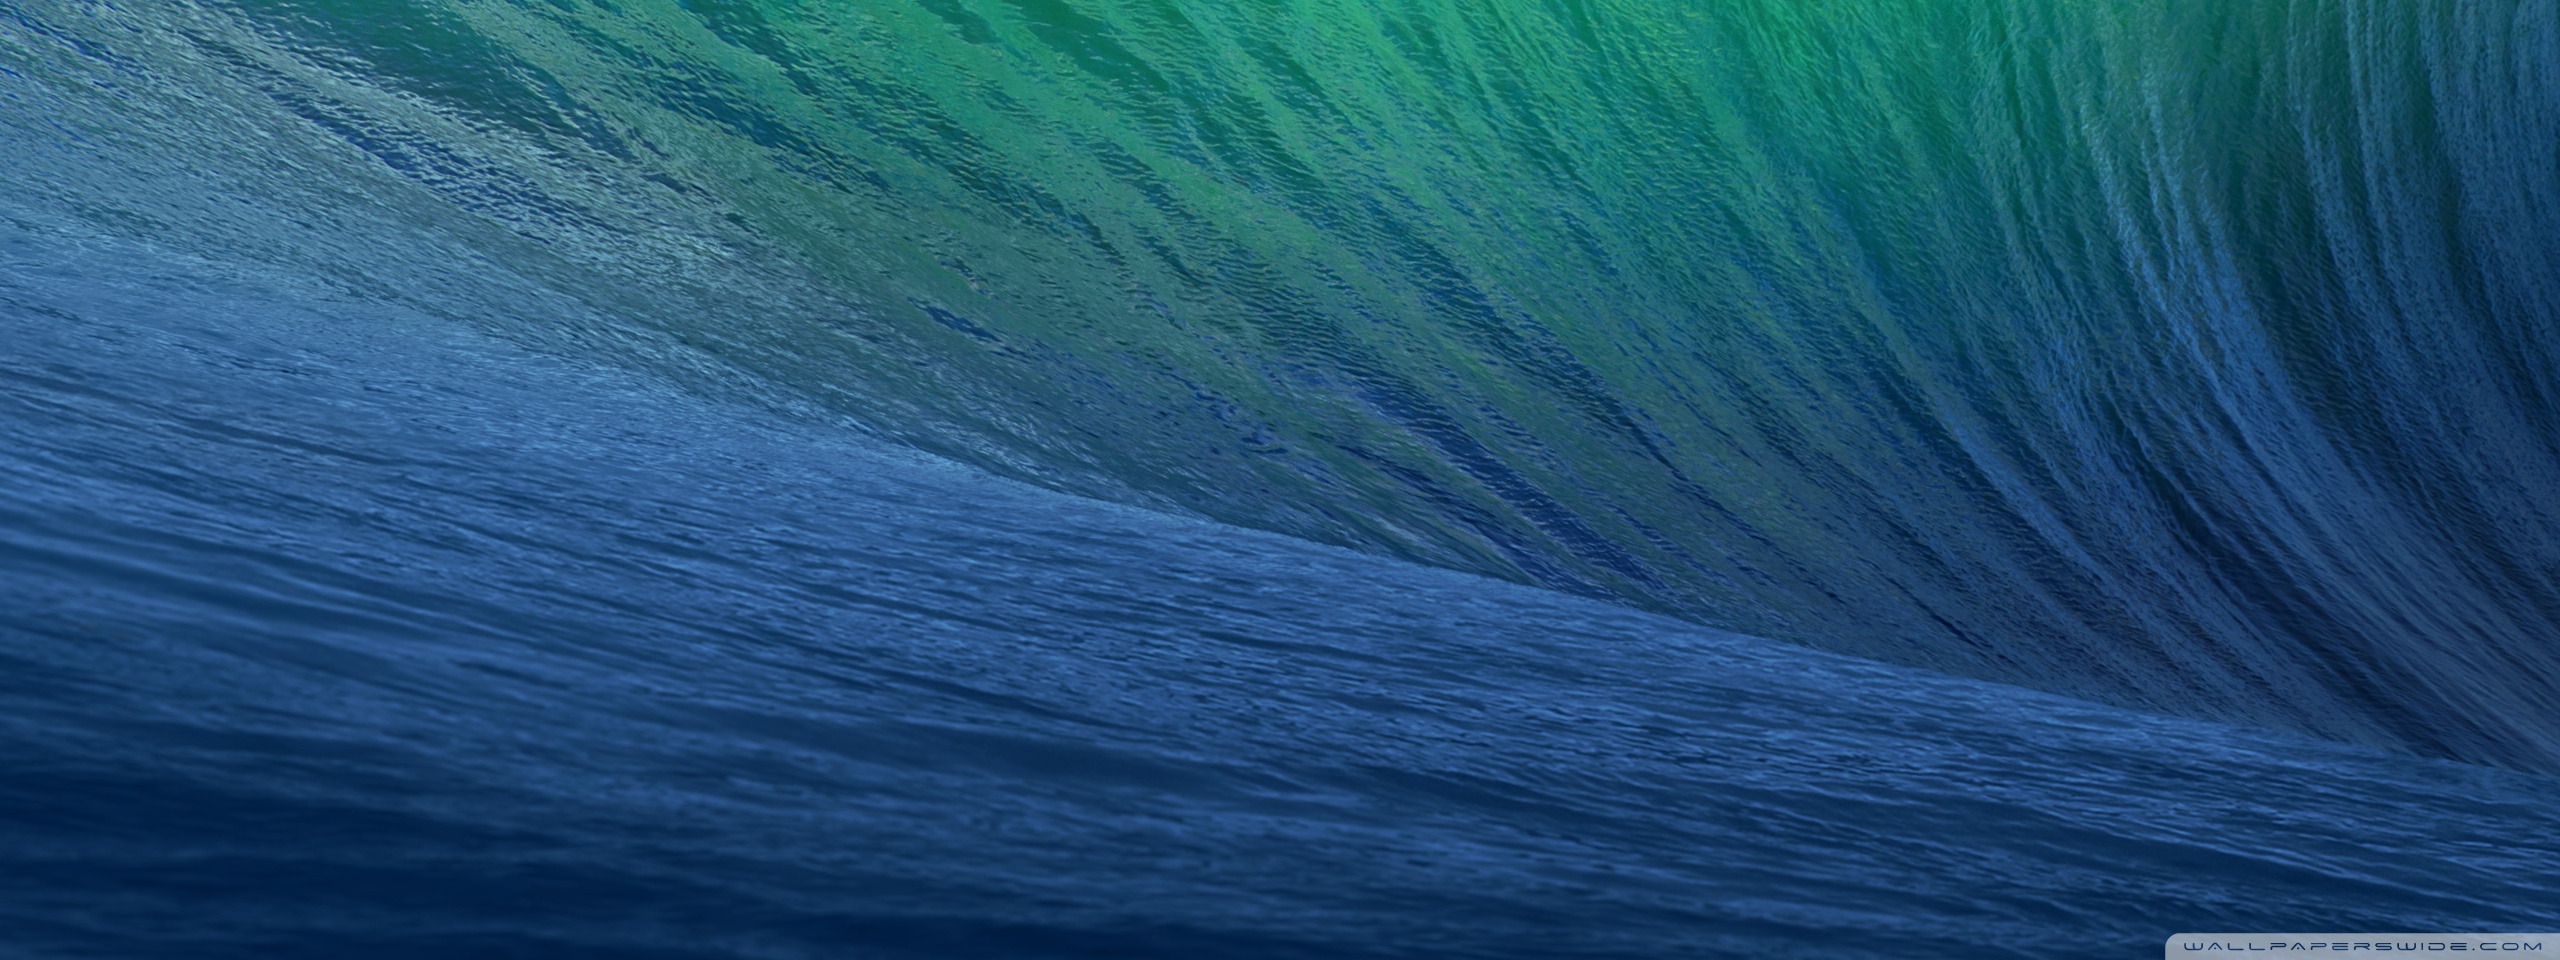 Apple Mac OS X Mavericks HD desktop wallpaper Widescreen High resolution